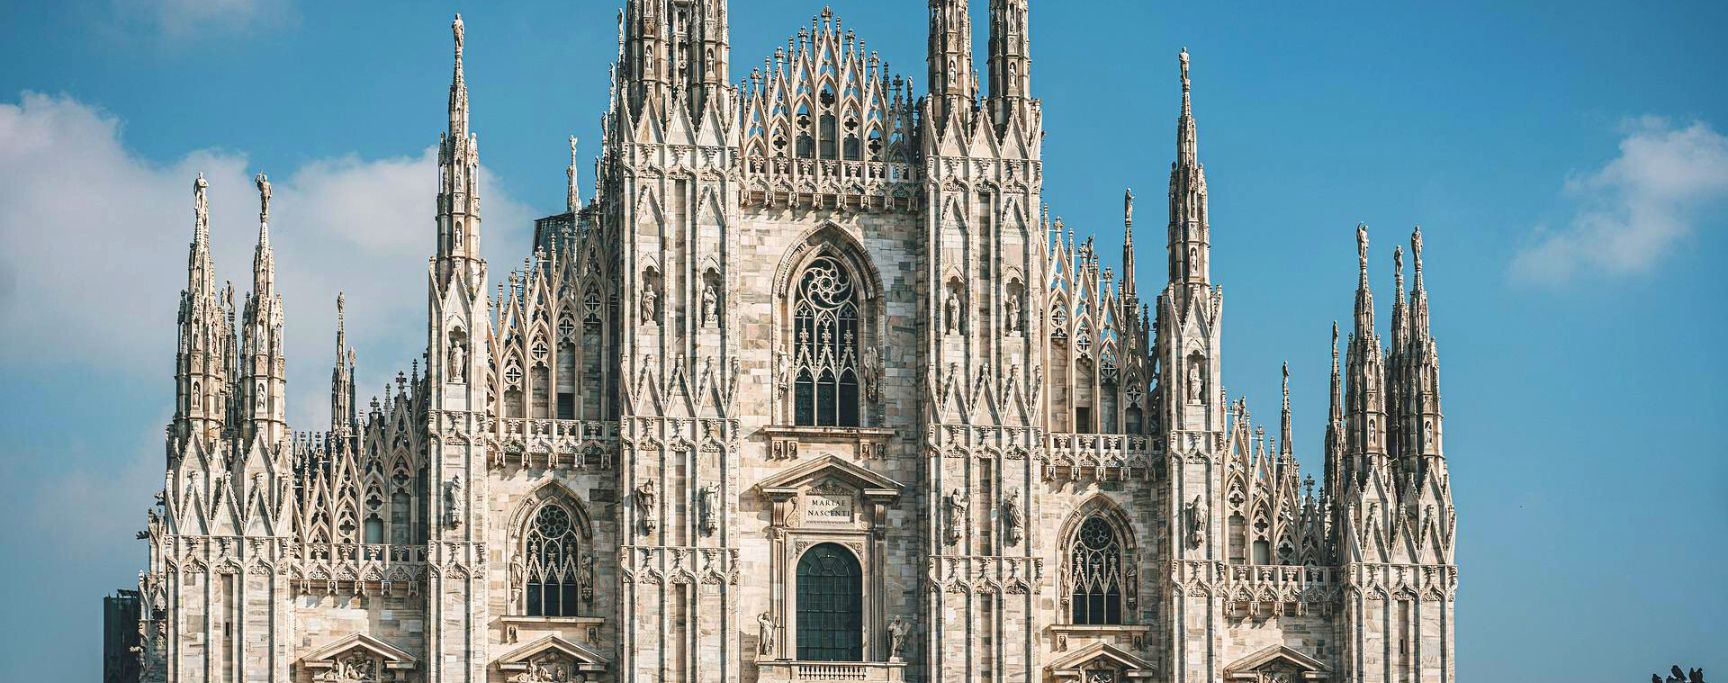 architecture gothique moyen age